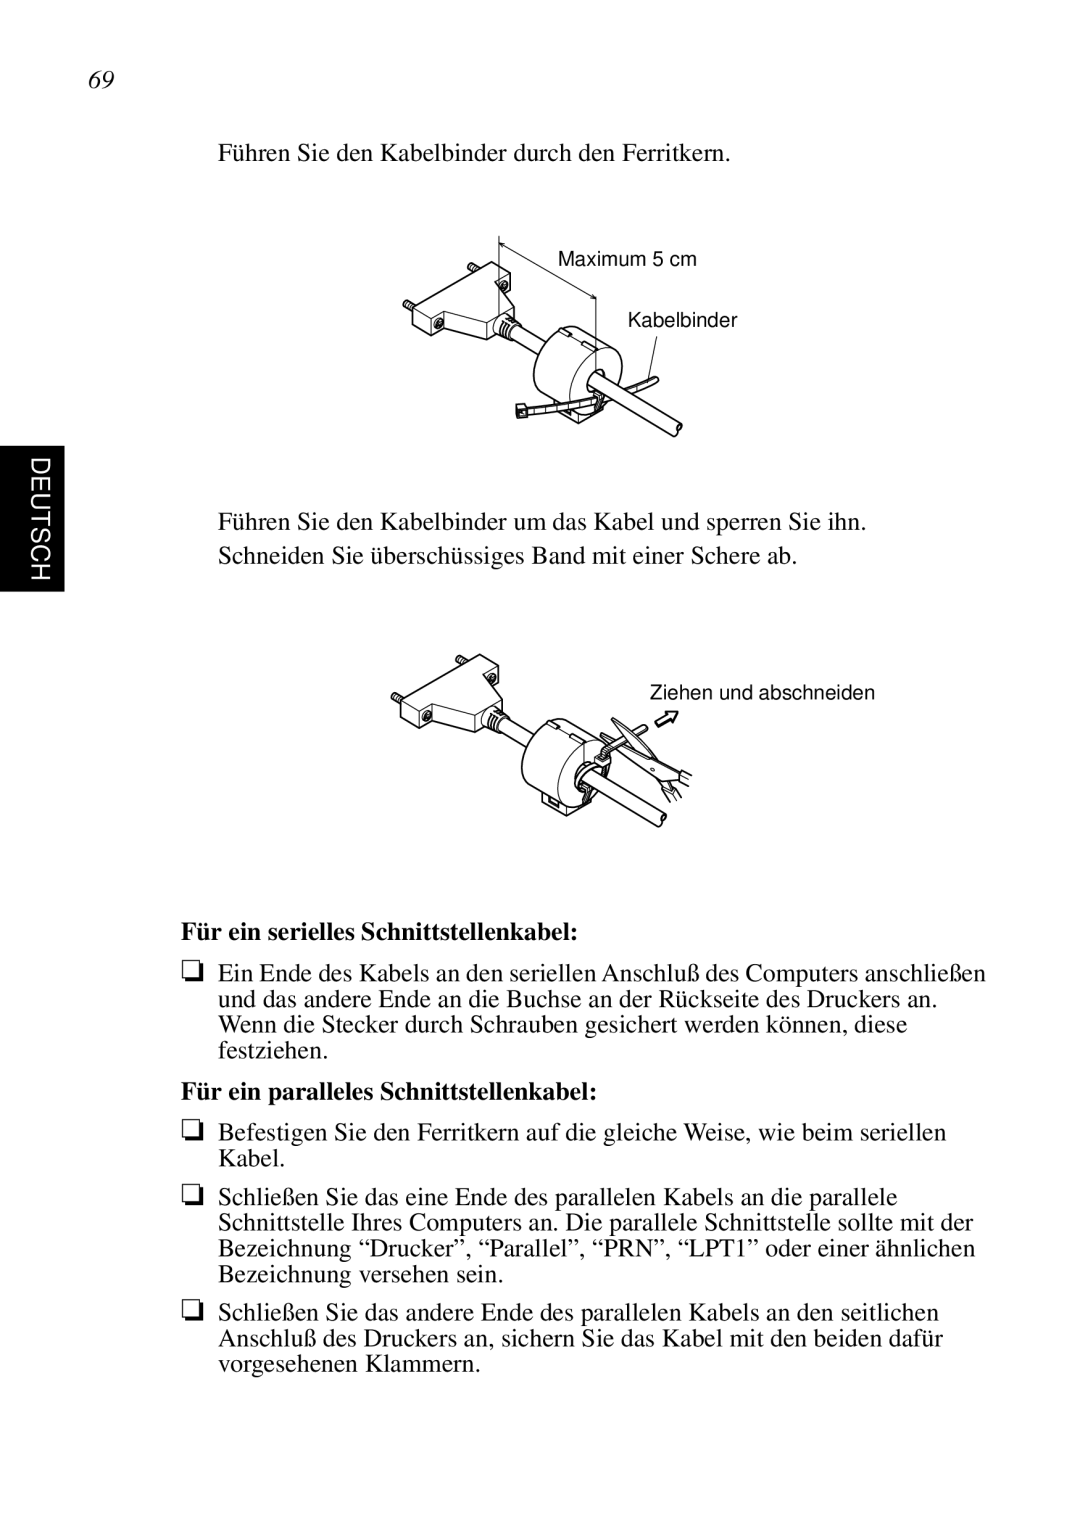 Star Micronics SP298 user manual Deutsch, Für ein serielles Schnittstellenkabel, Für ein paralleles Schnittstellenkabel 